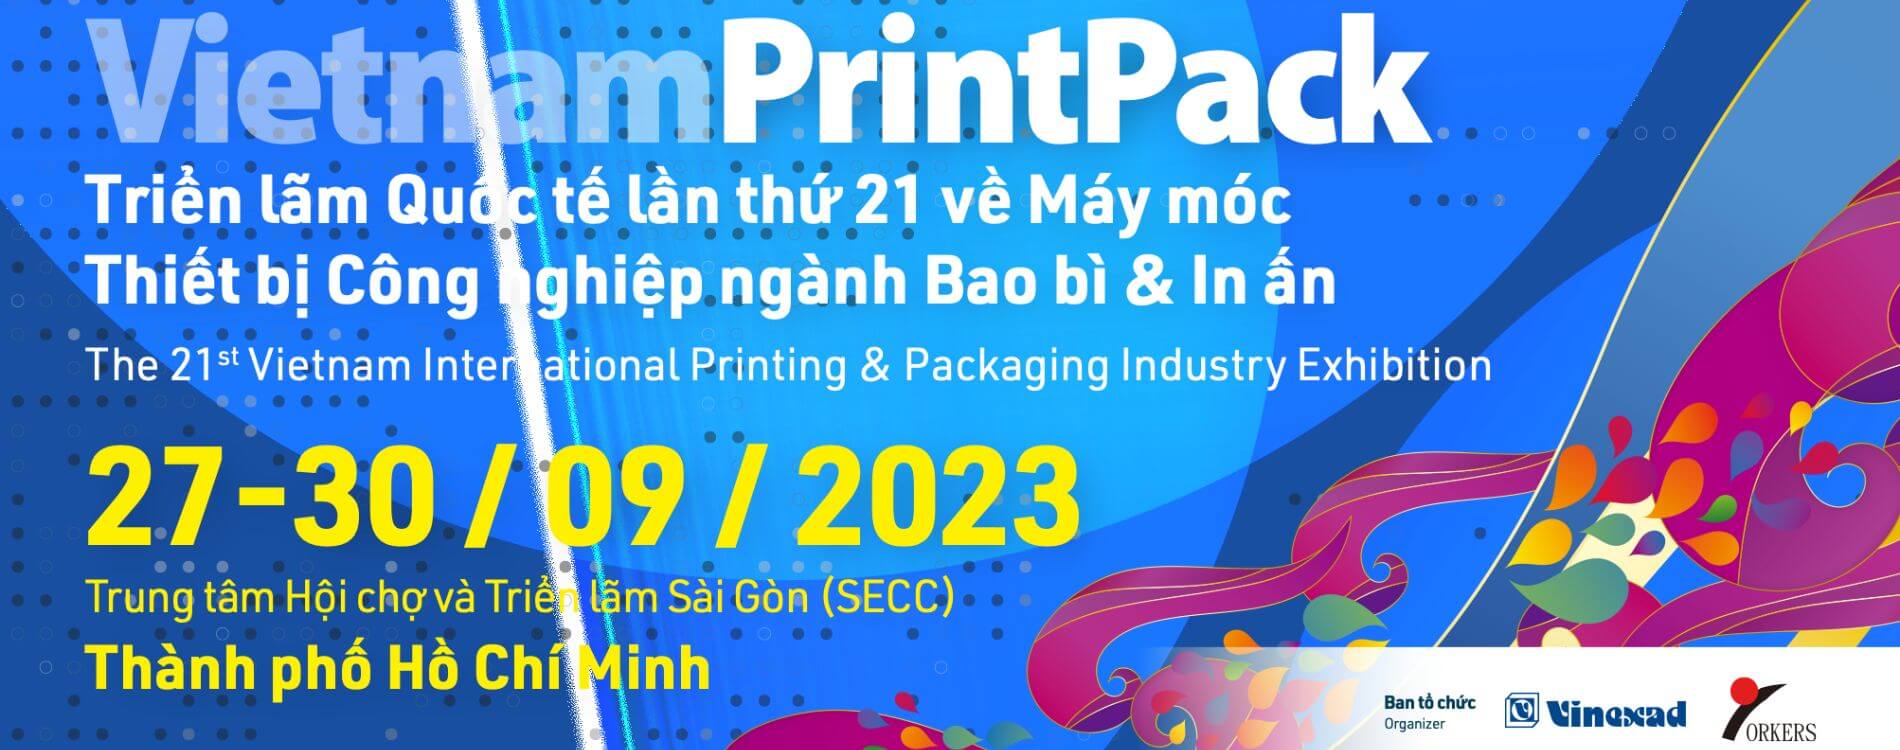 VietnamPrintPack 2023: A Pinnacle in Packaging & Printing